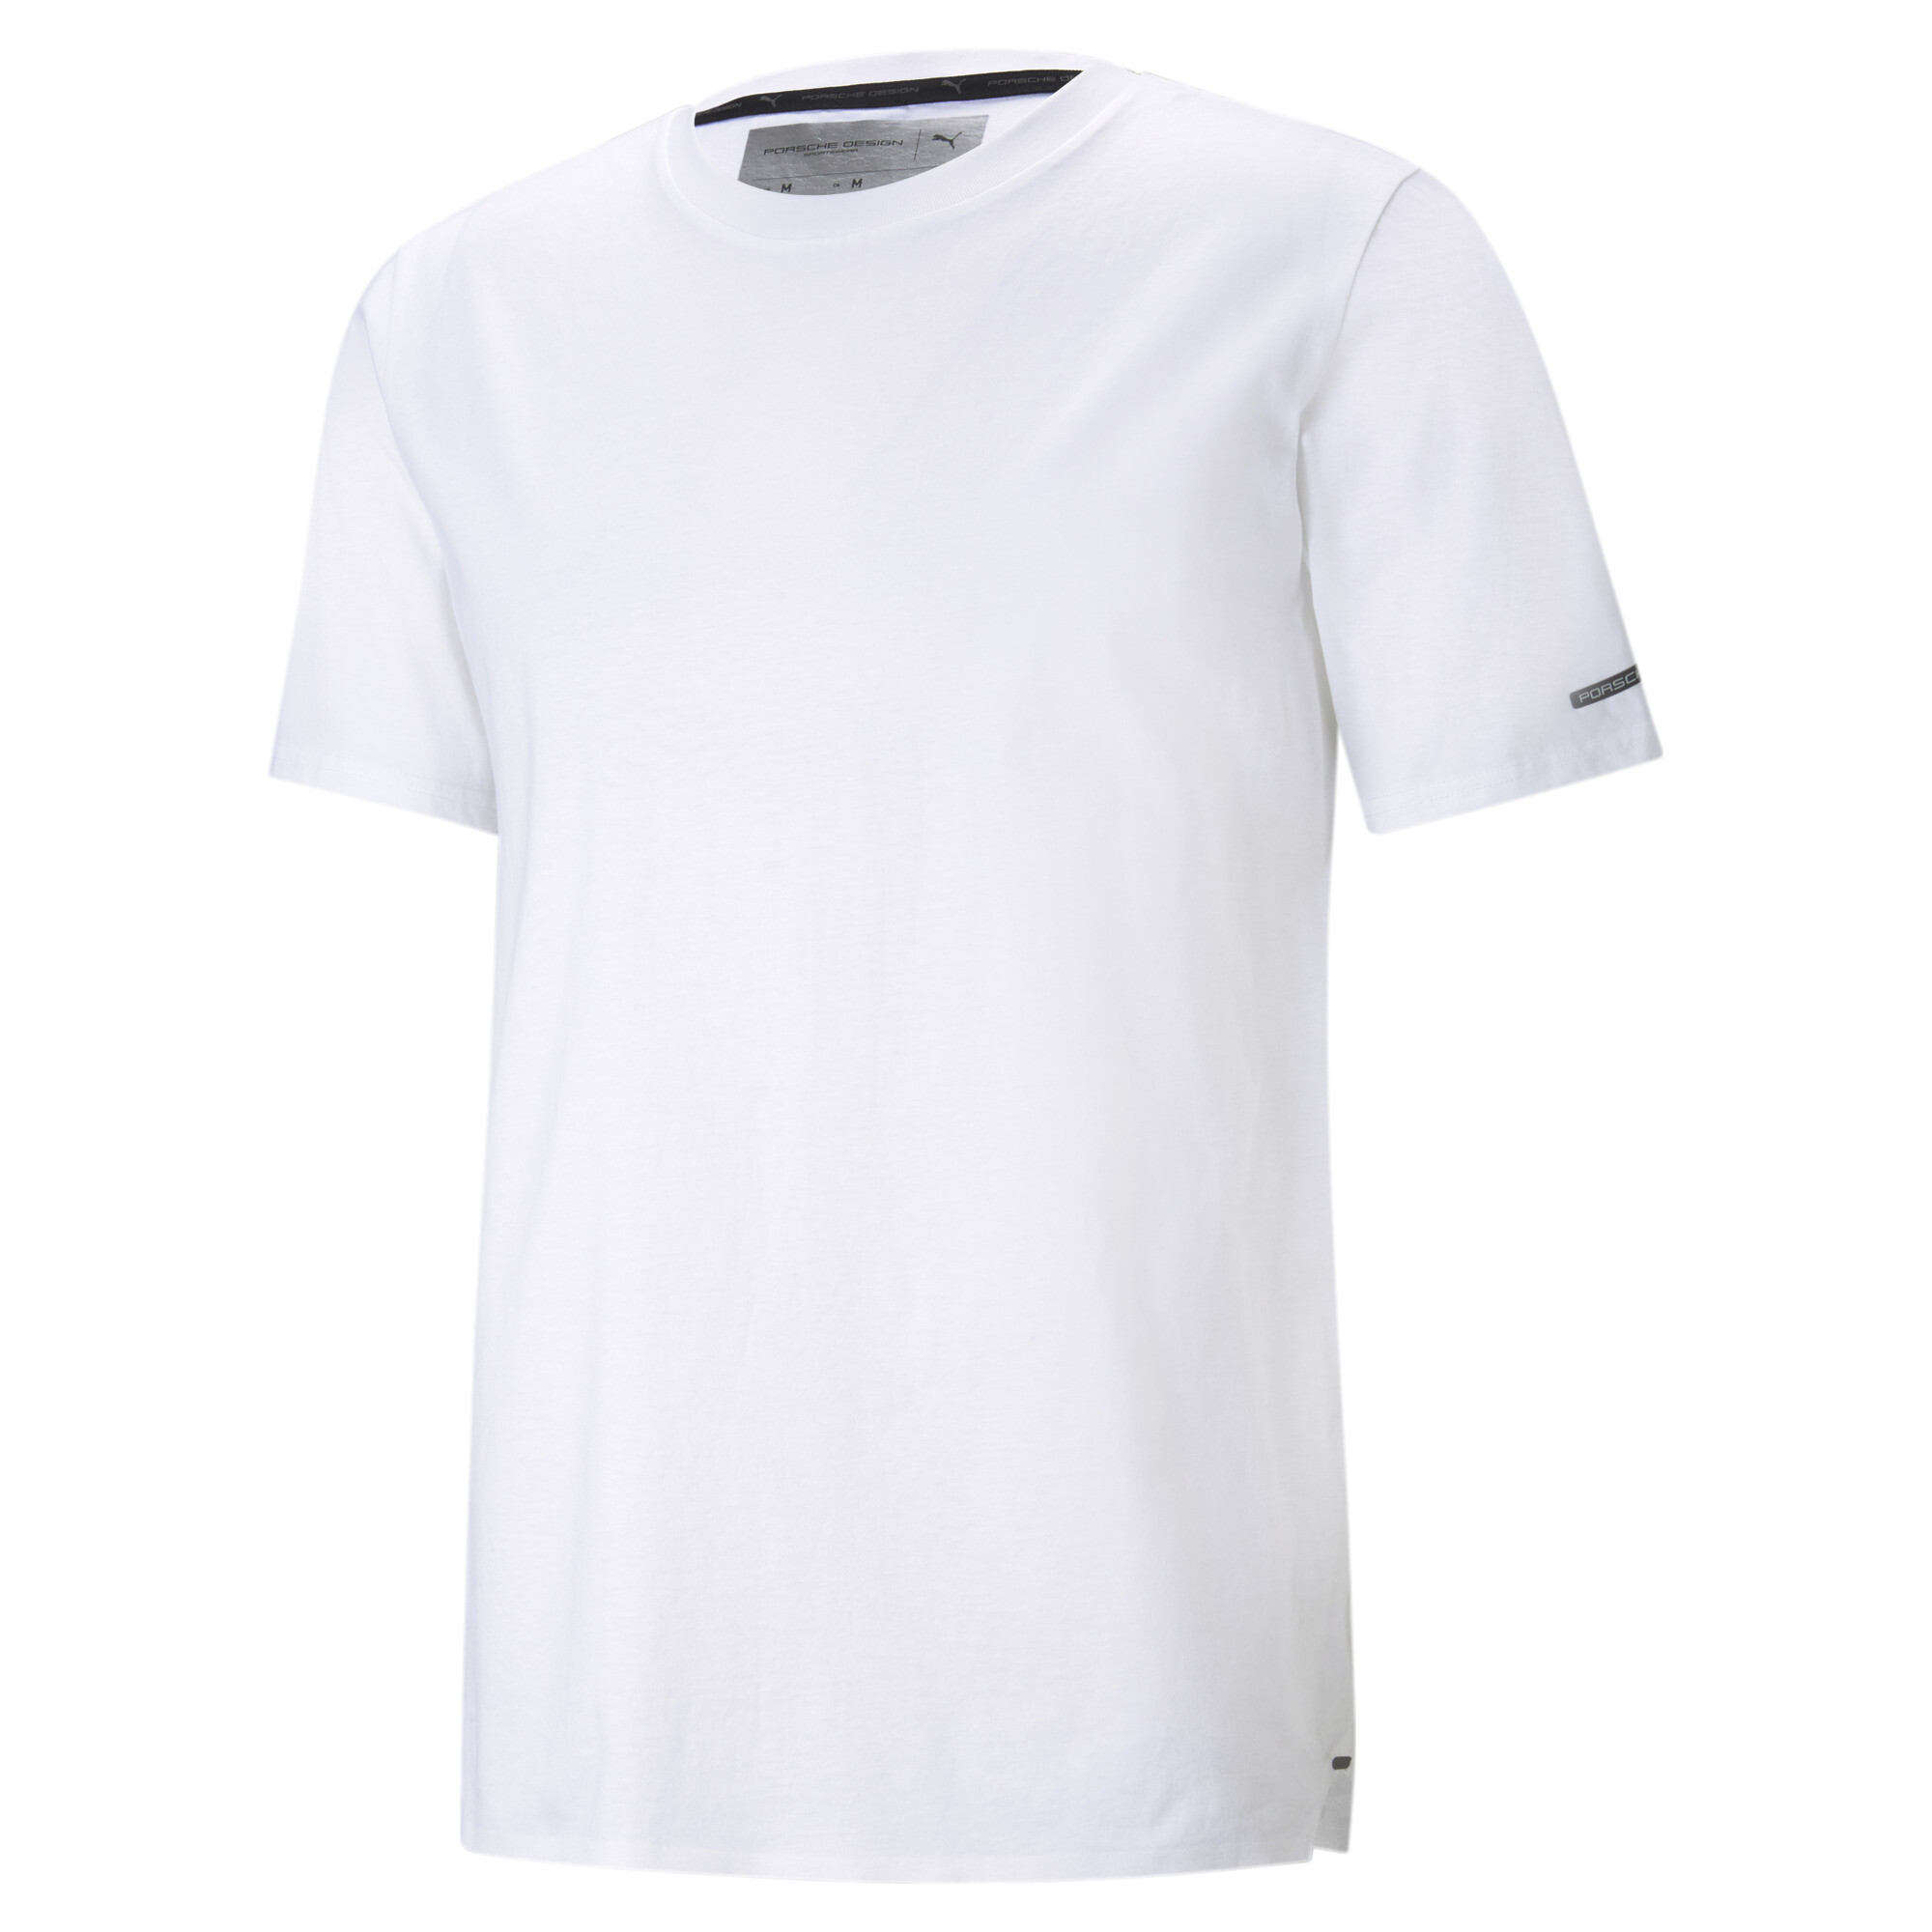  プーマ メンズ ポルシェ デザイン エッセンシャル 半袖 Tシャツ メンズ Puma White ｜PUMA.com